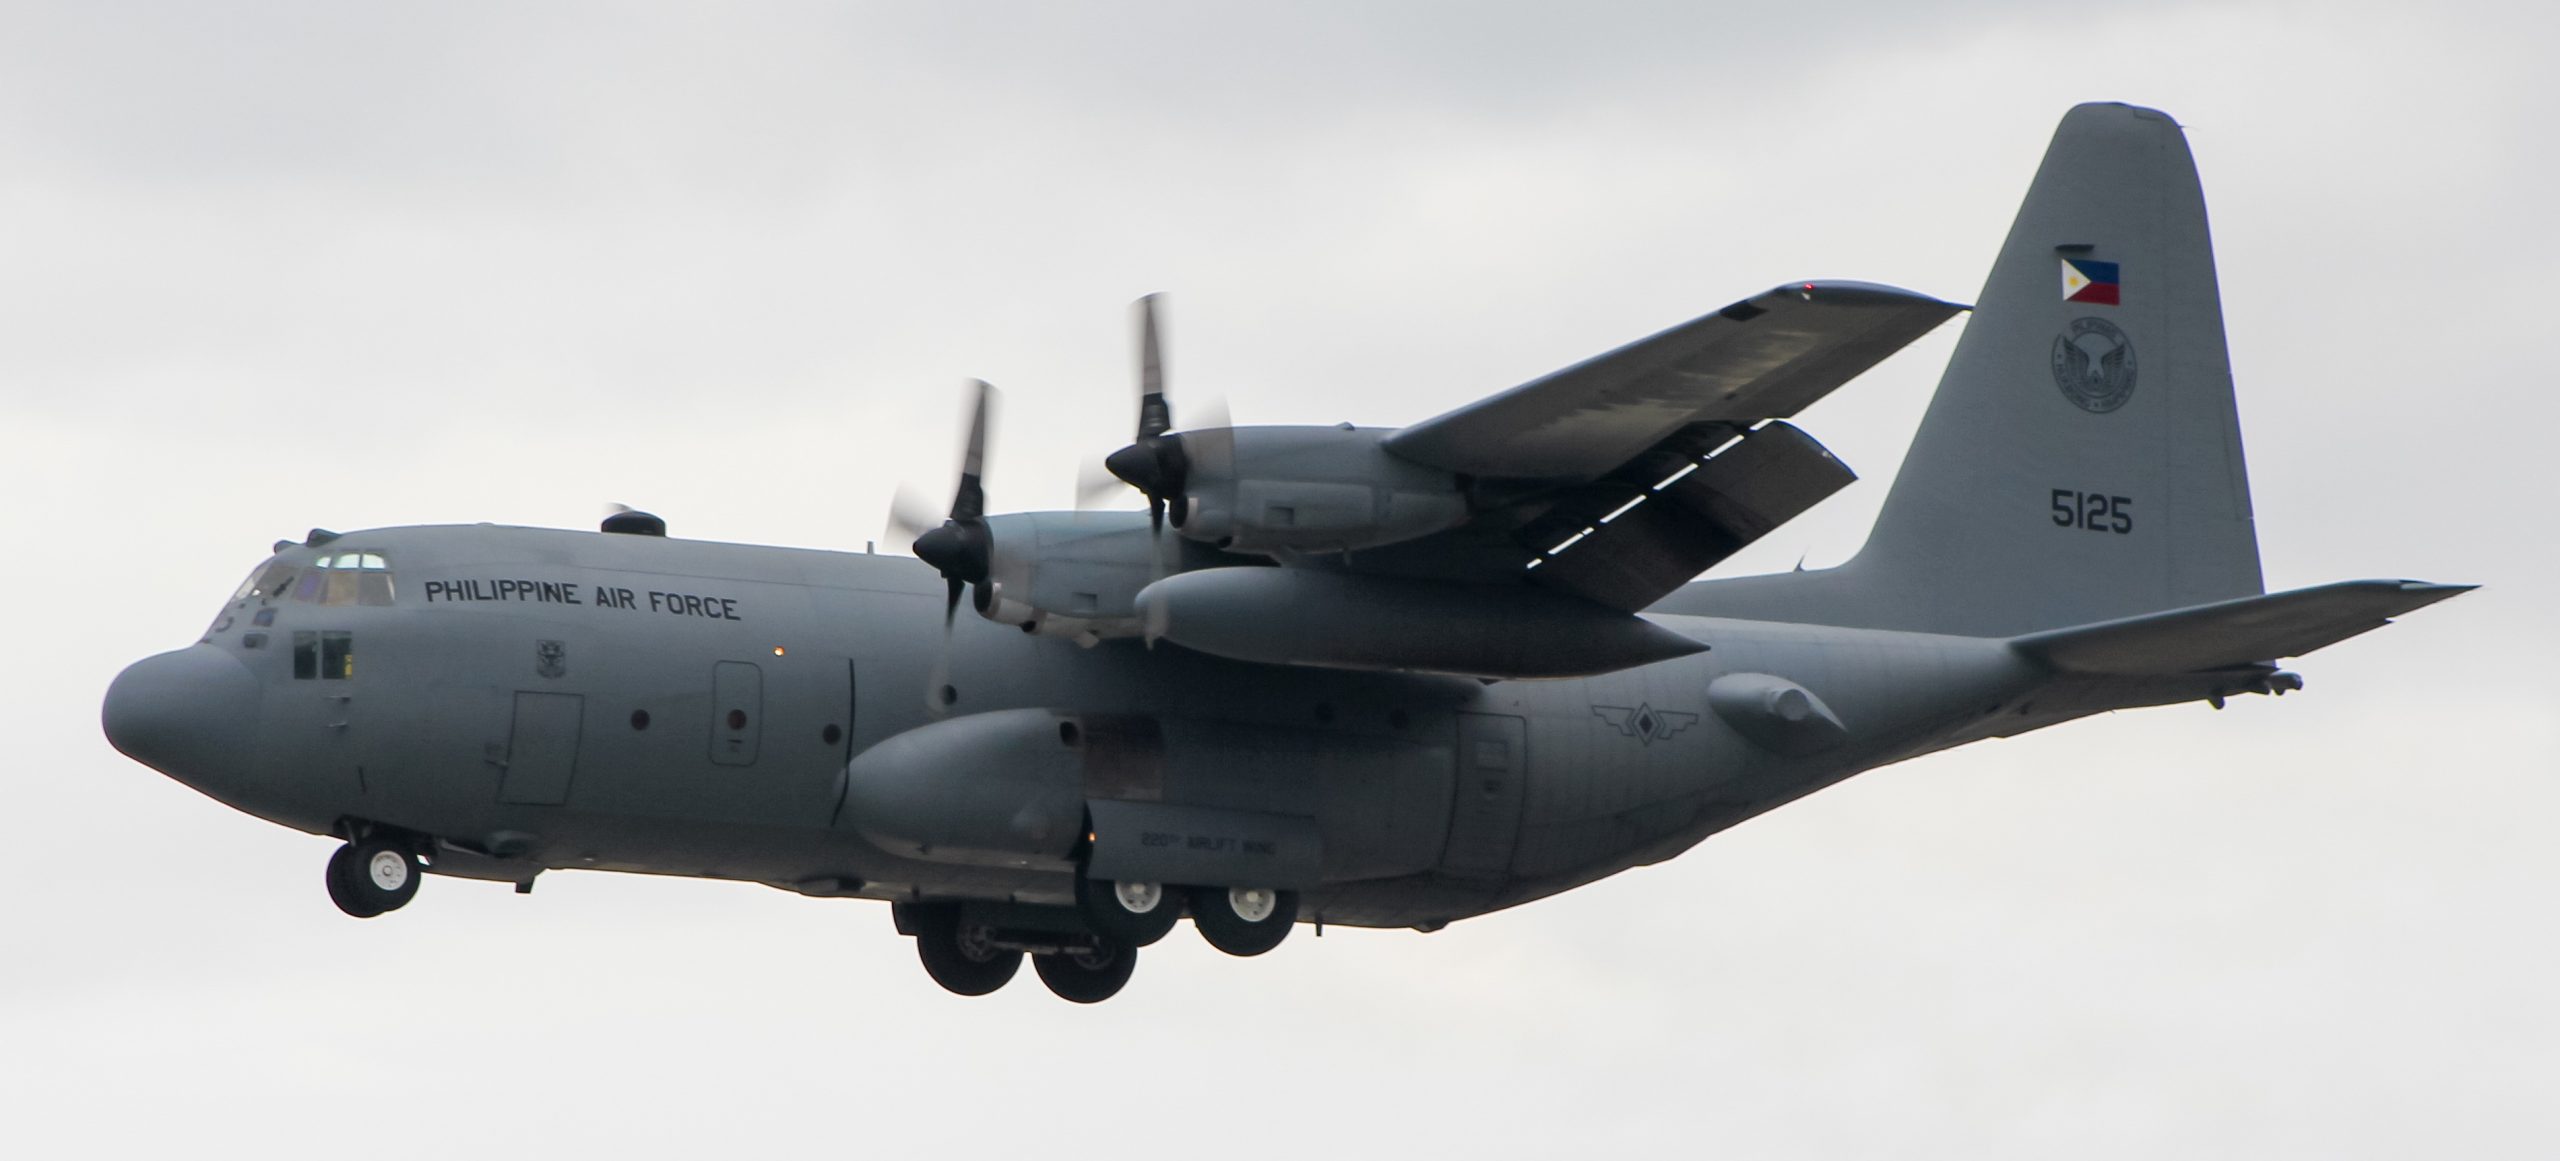 10 godina zrakoplova C-130E Hercules u oružanim snagama Poljske, 1. dio